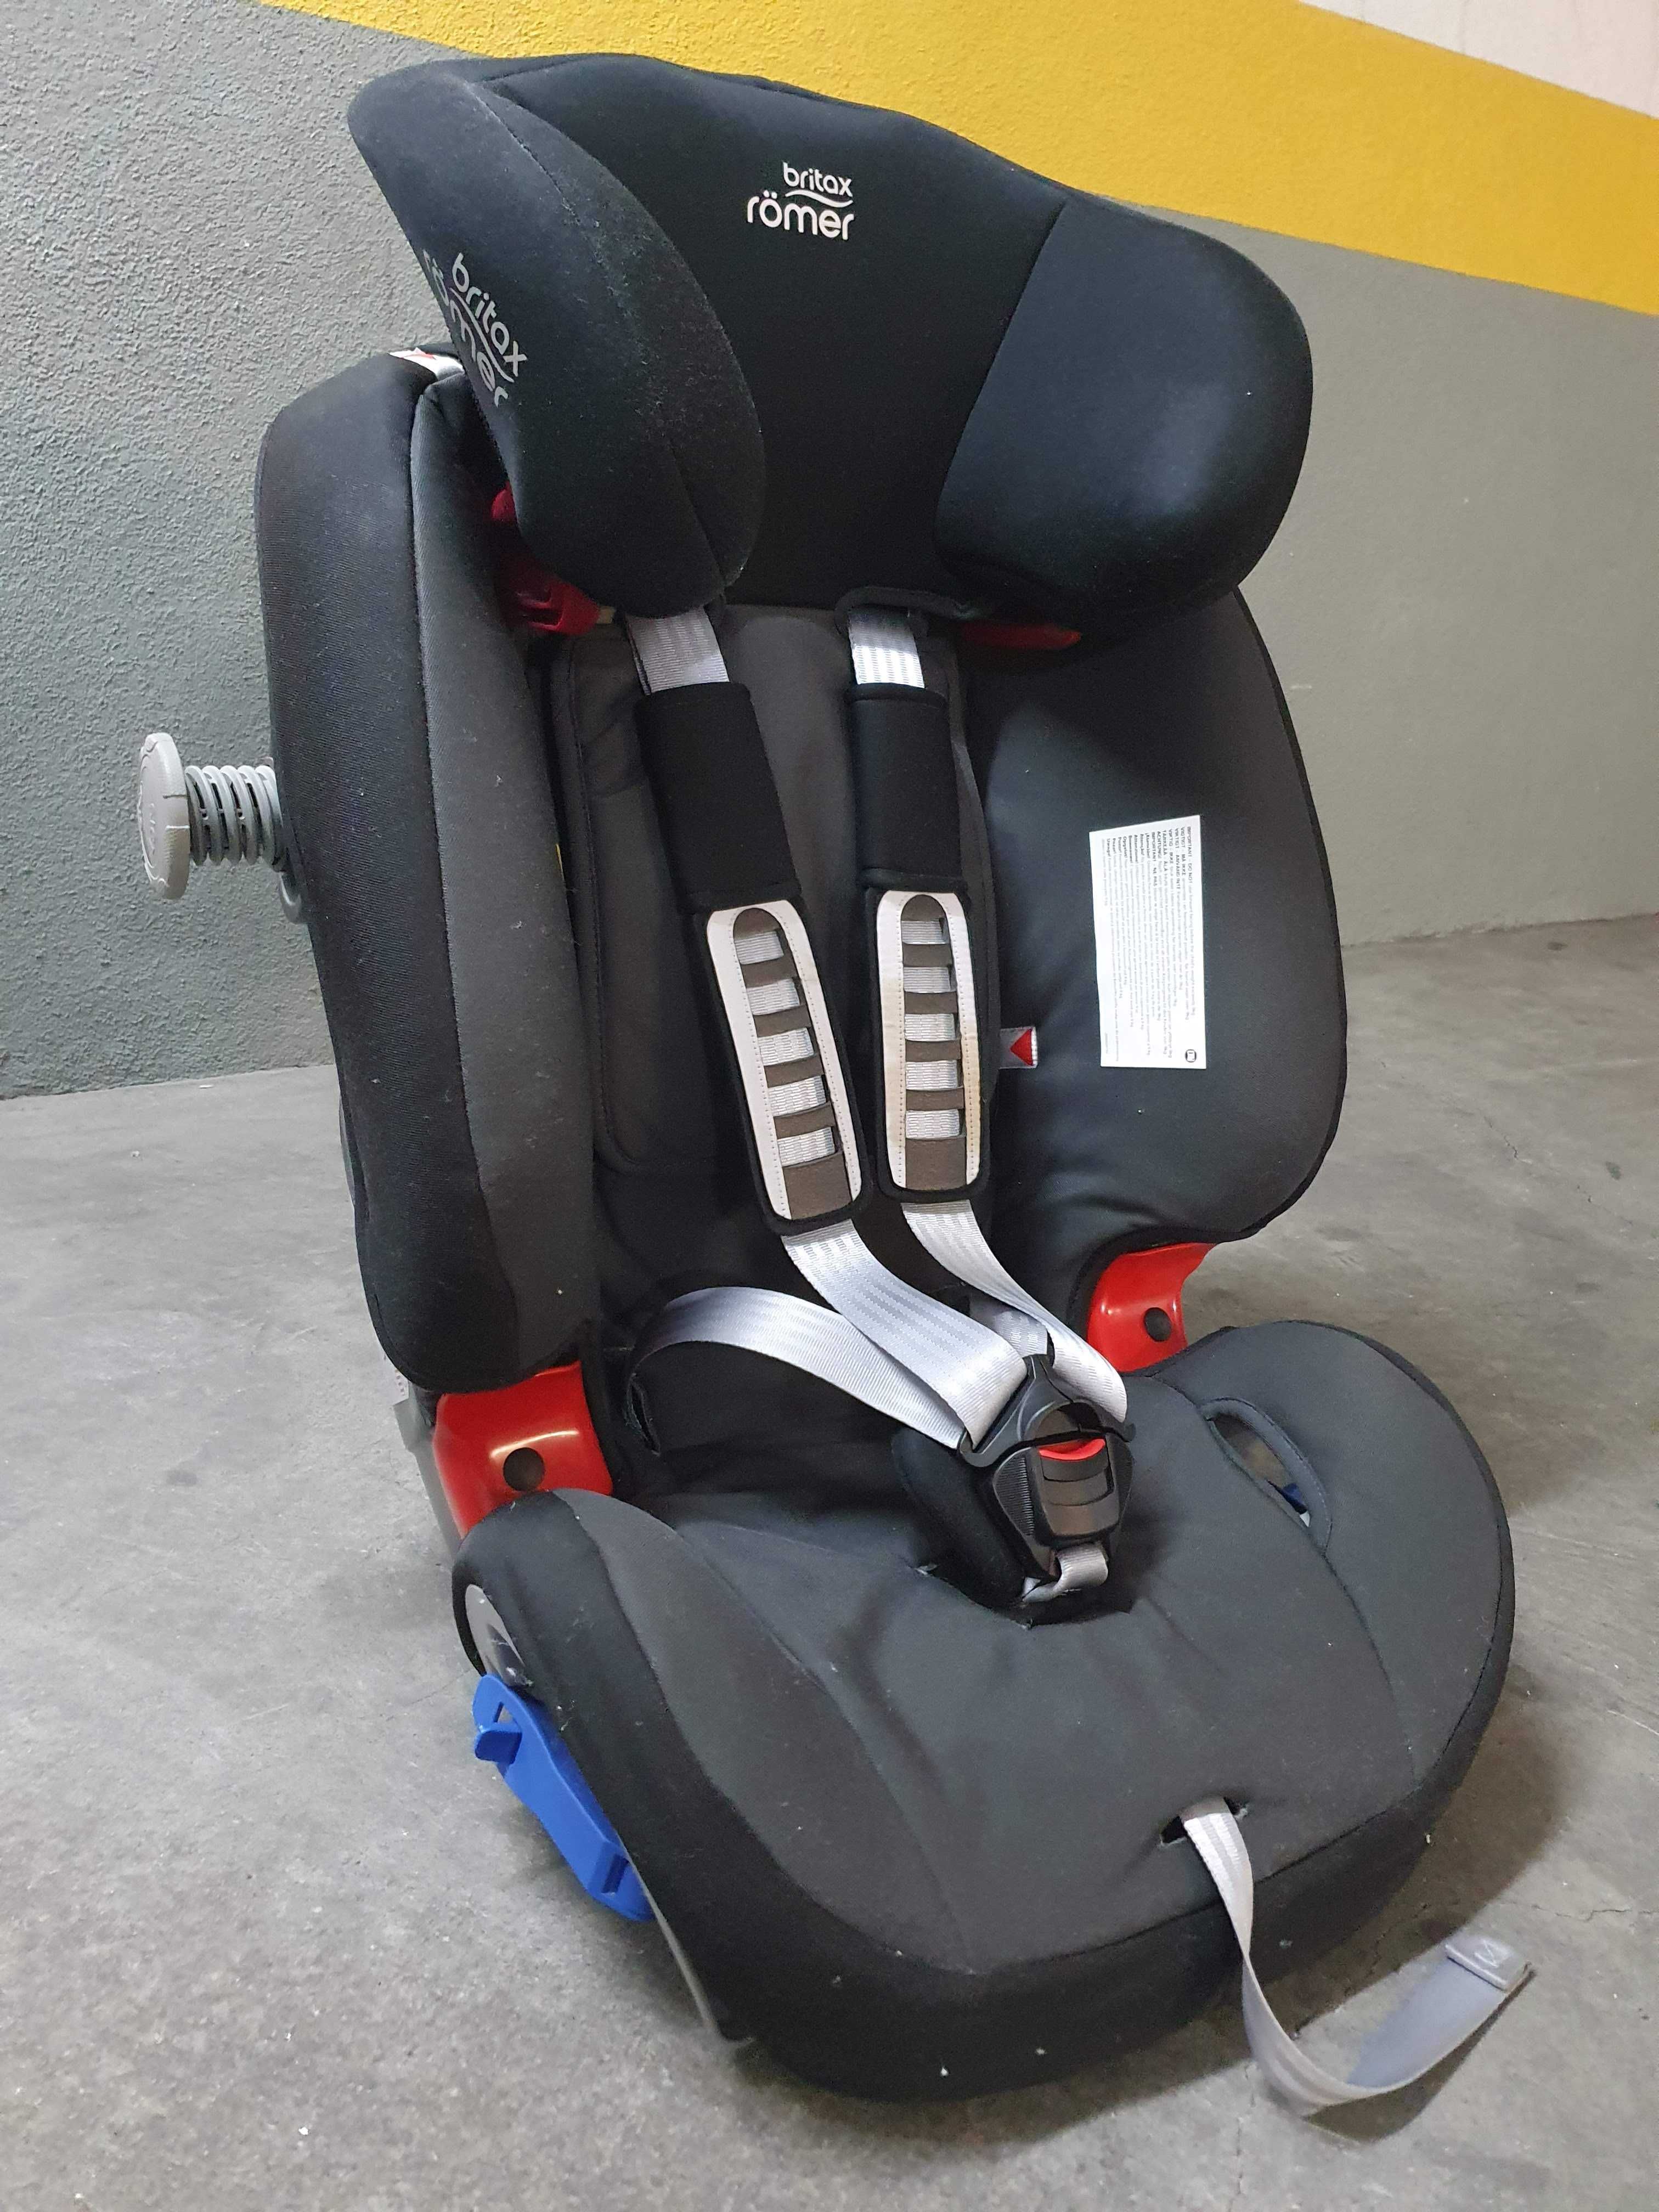 A mais segura cadeira auto Grupos 1/2 - 9 meses a 6 anos